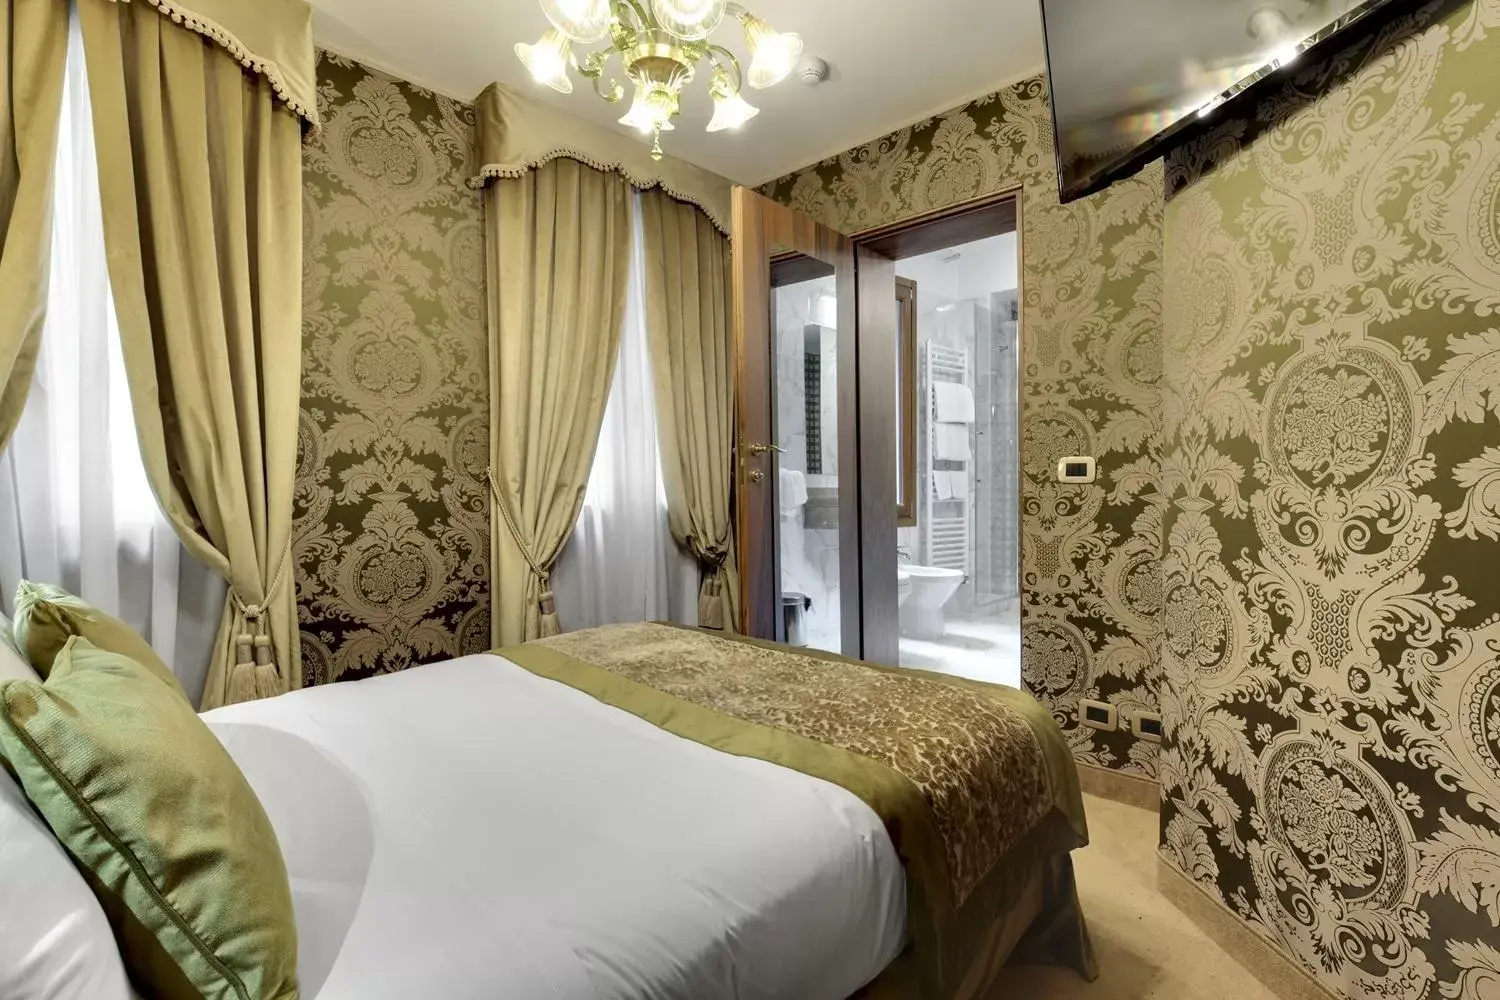 Bed in Hotel Casanova